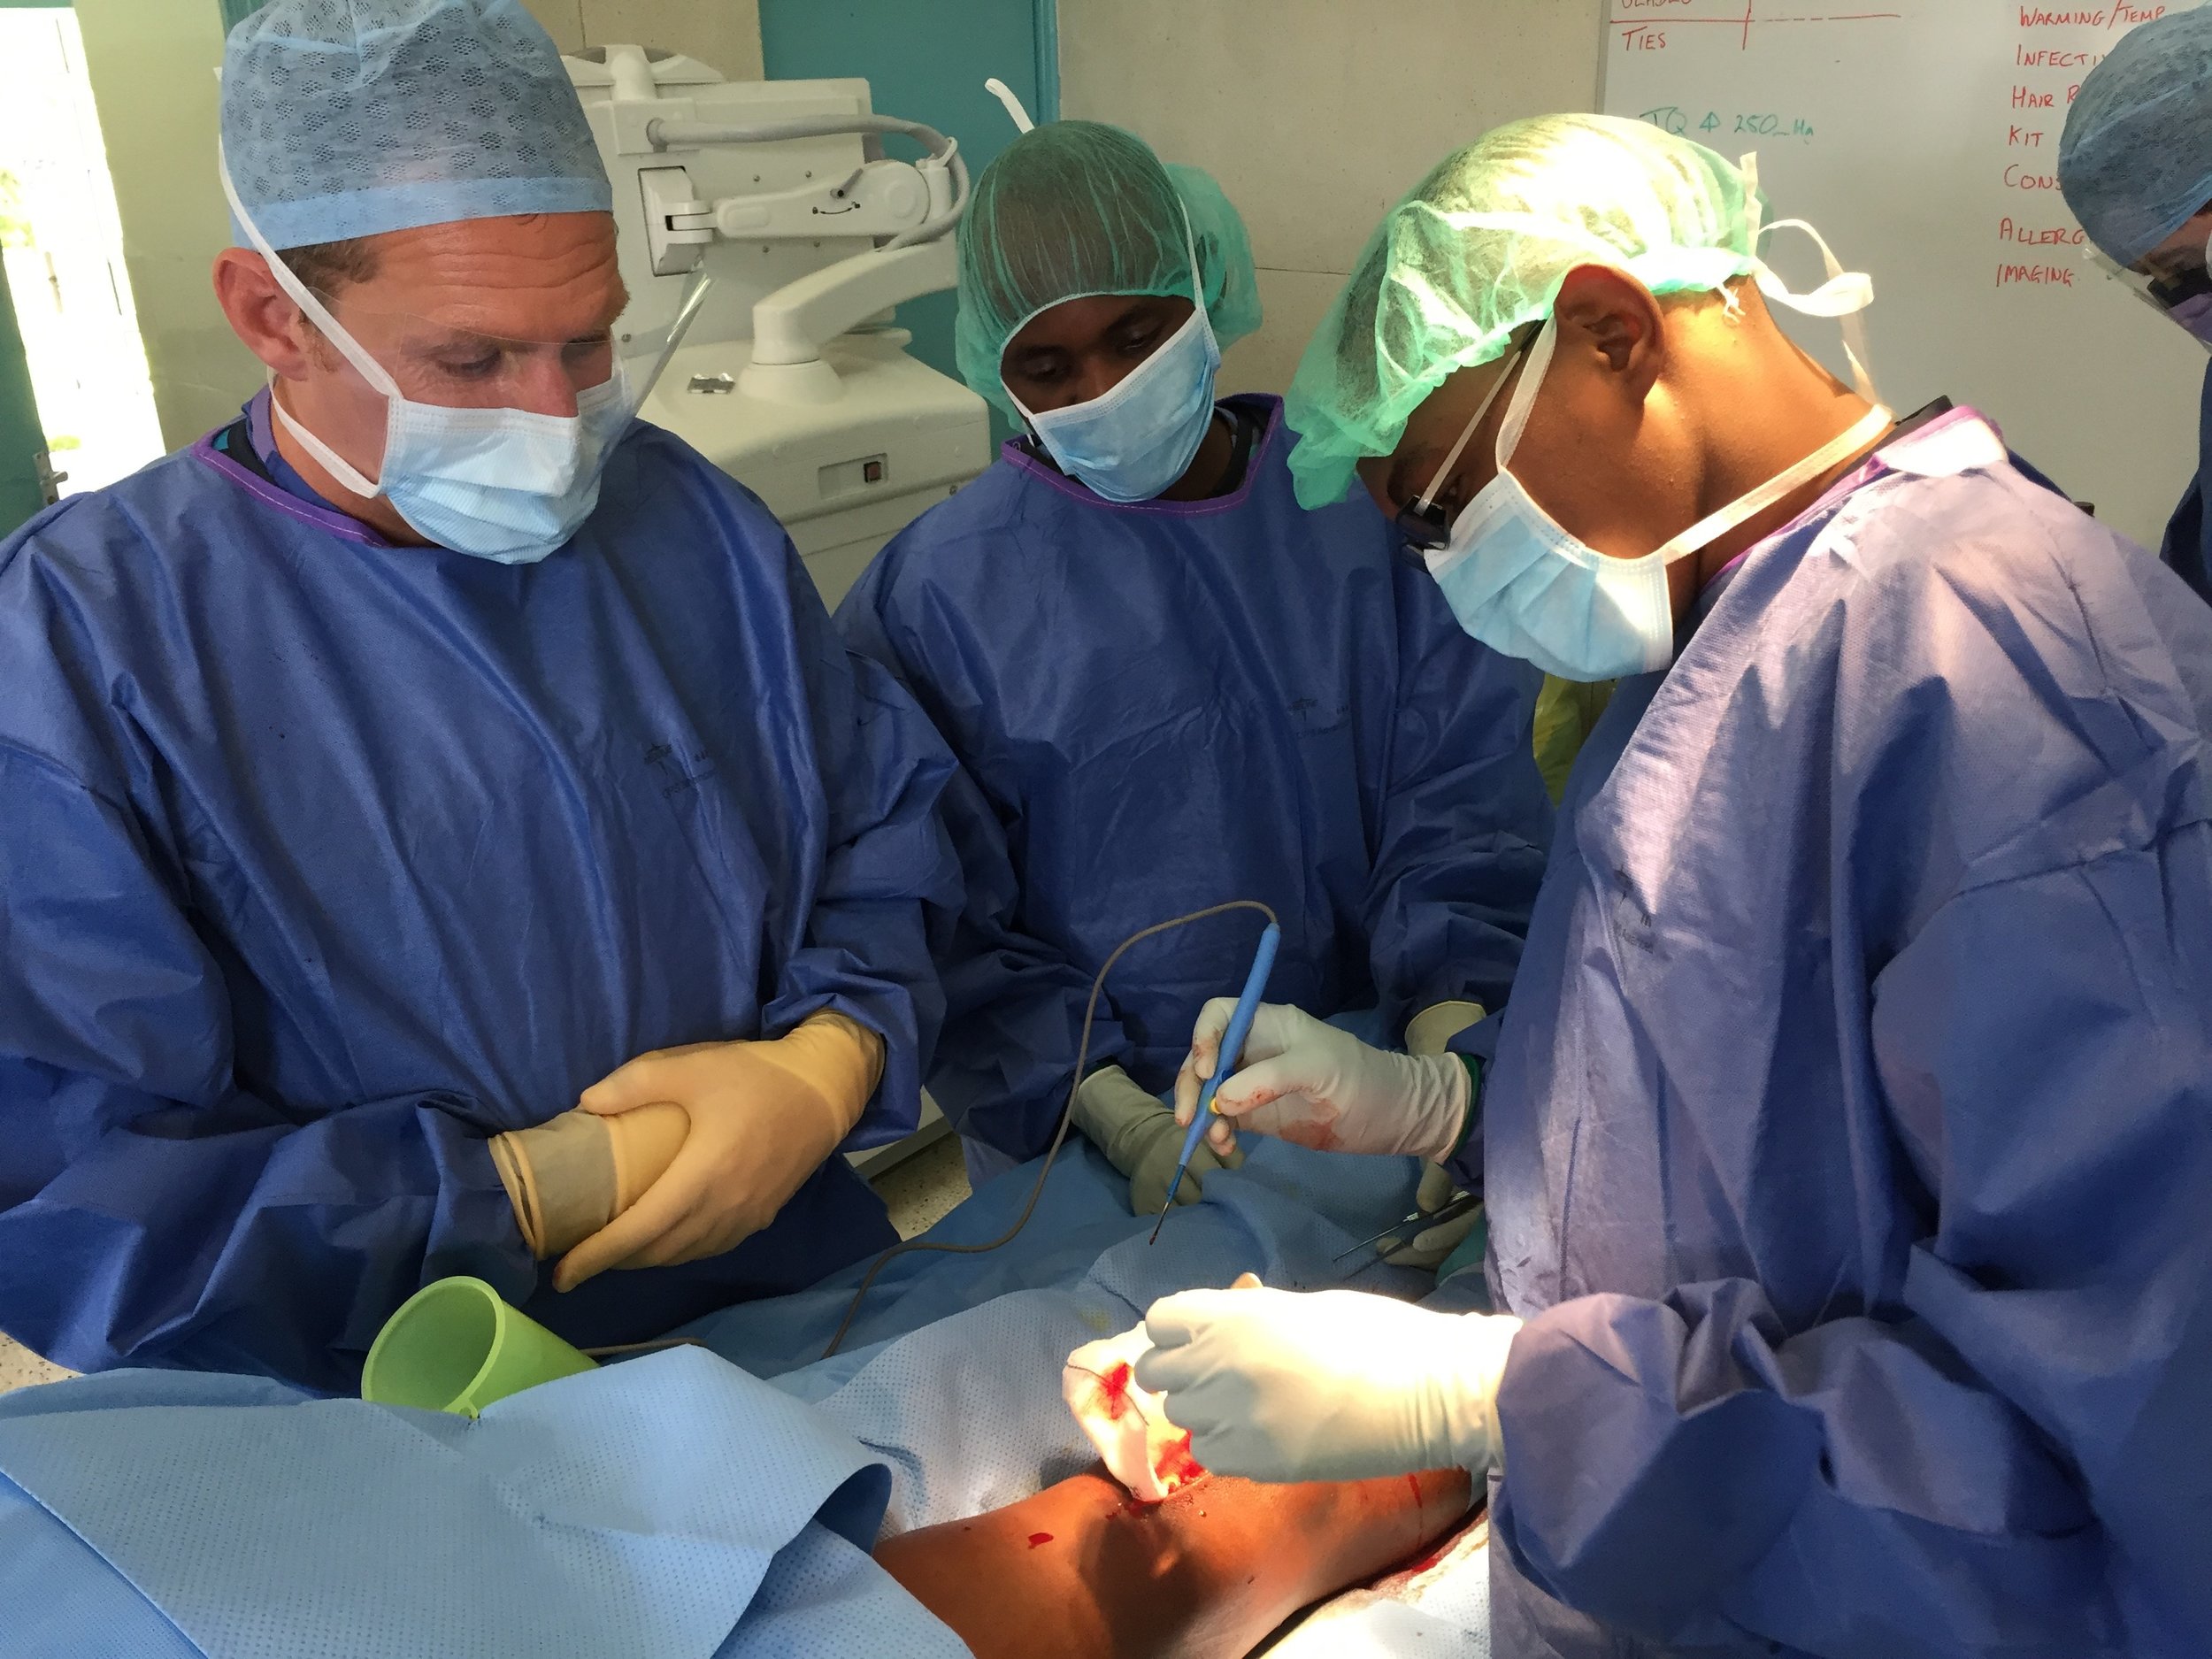  Njeri performing a surgical procedure, Rob overseeing &amp; Kenyan Scrub nurse 